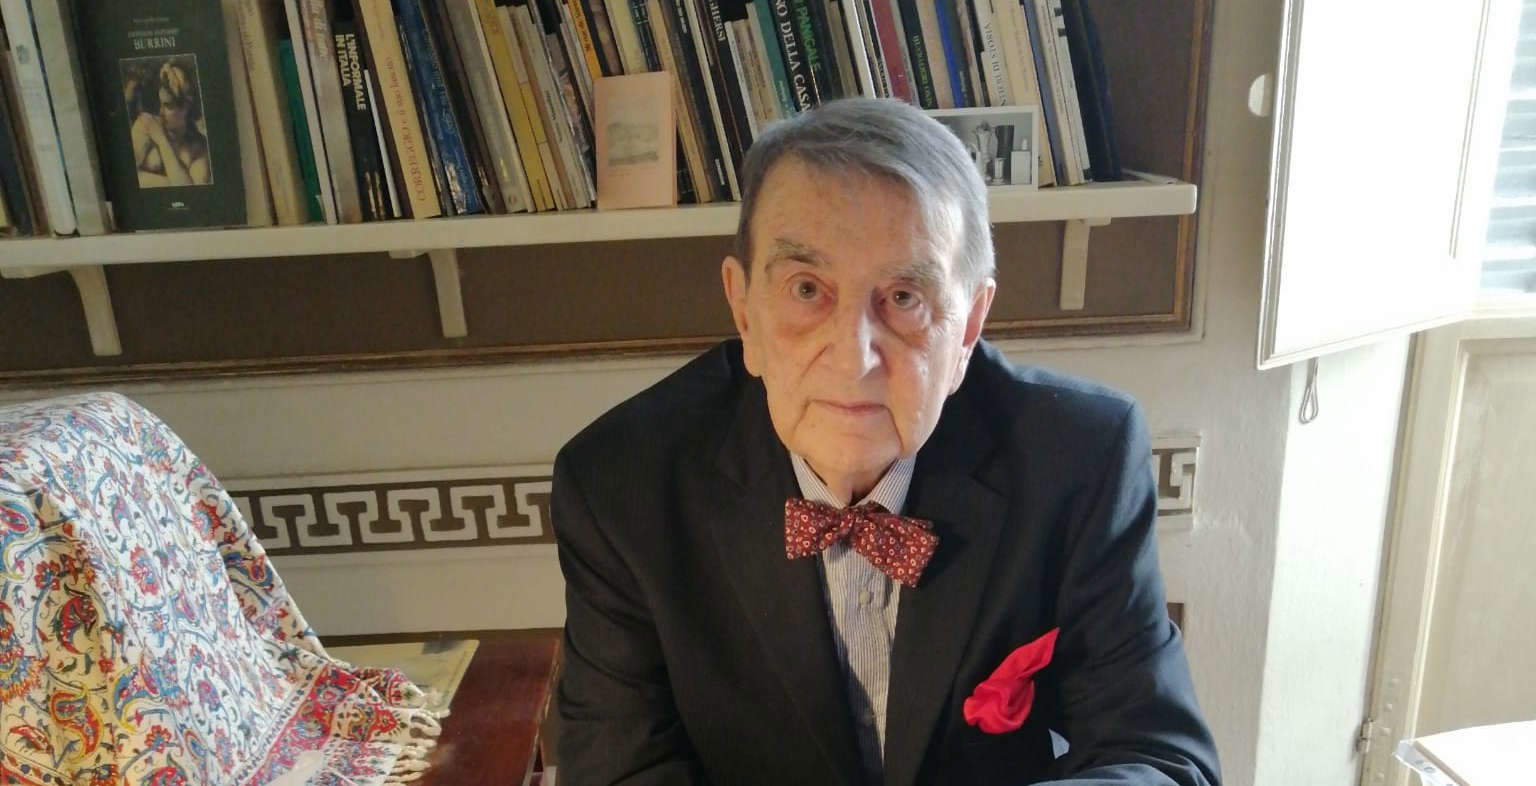 Addio a Eugenio Riccomini, grande storico dell'arte